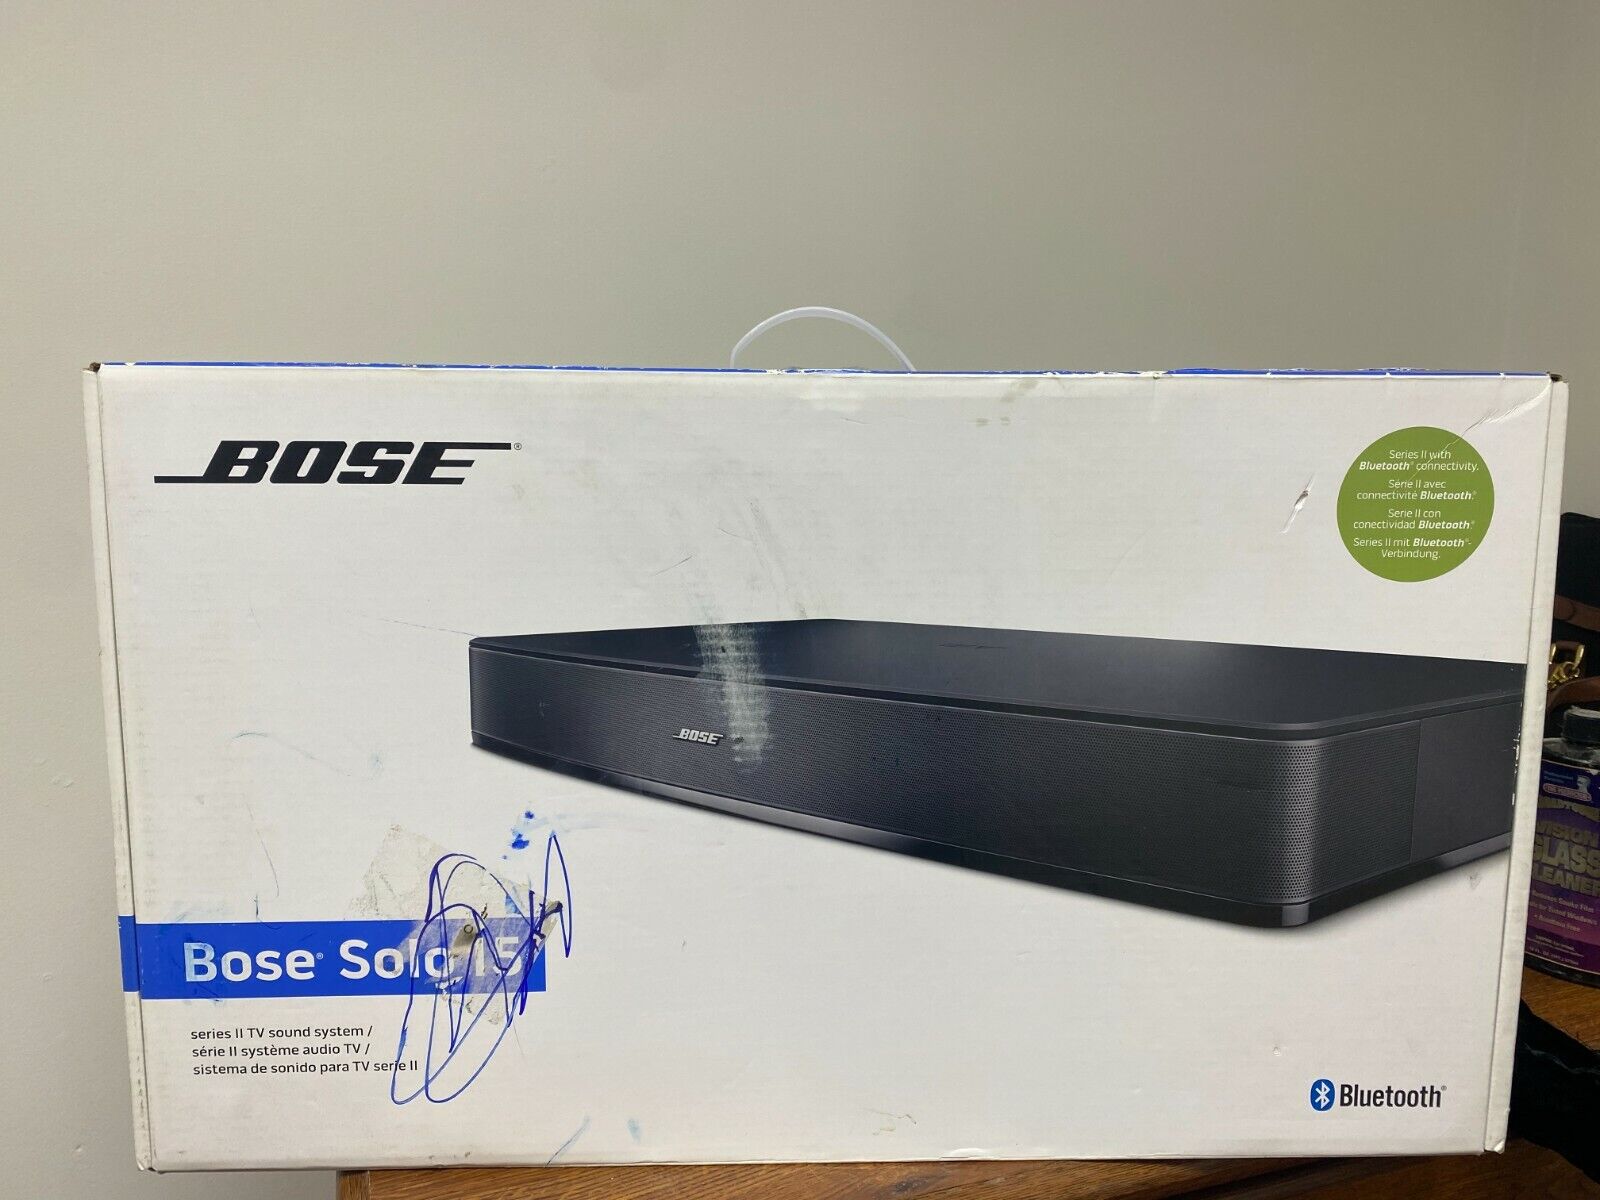 Bose Solo 15 TV Sound System - Black for sale online | eBay